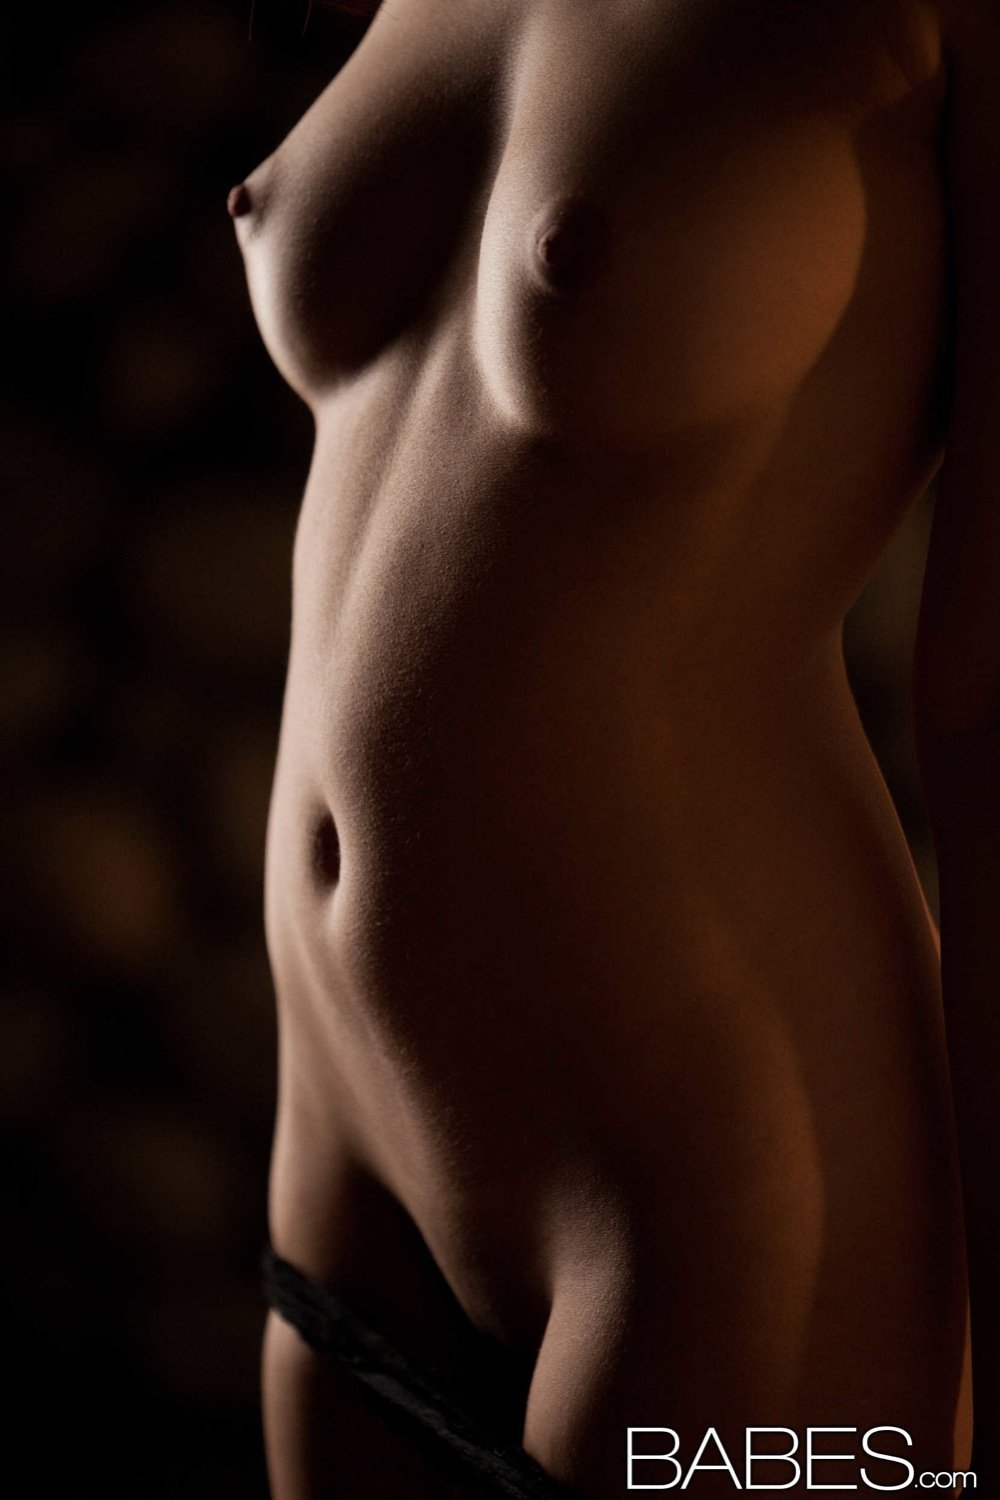 Стройные телки демонстрируют интимные части тела в укромных местах 3 фотография